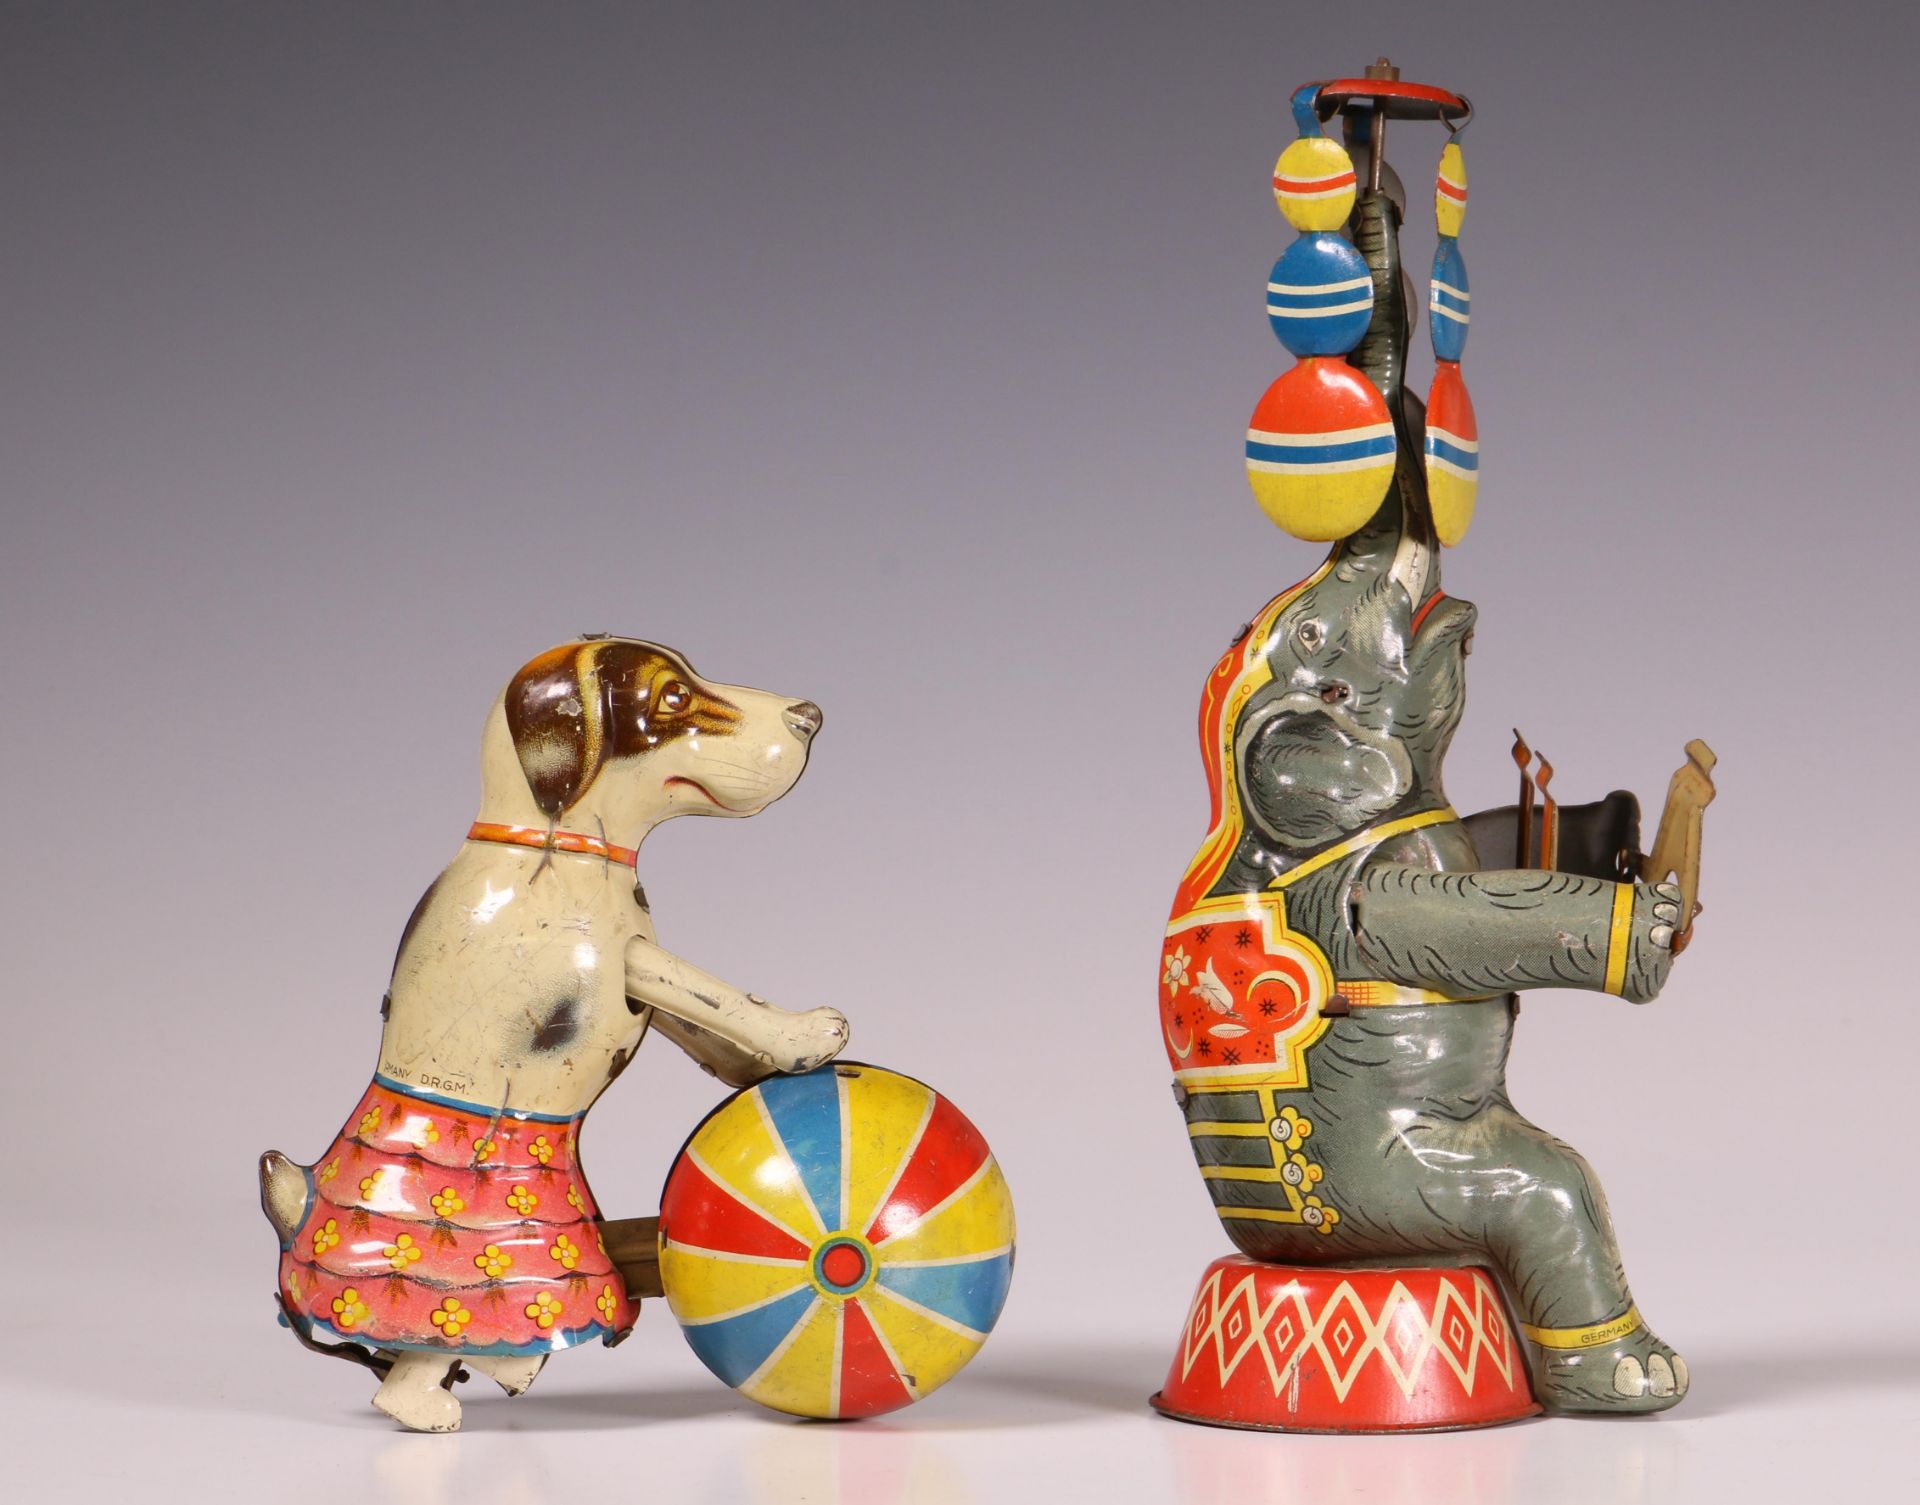 Duitsland, twee US zone stuks speelgoed, hond en olifant. - Bild 7 aus 7